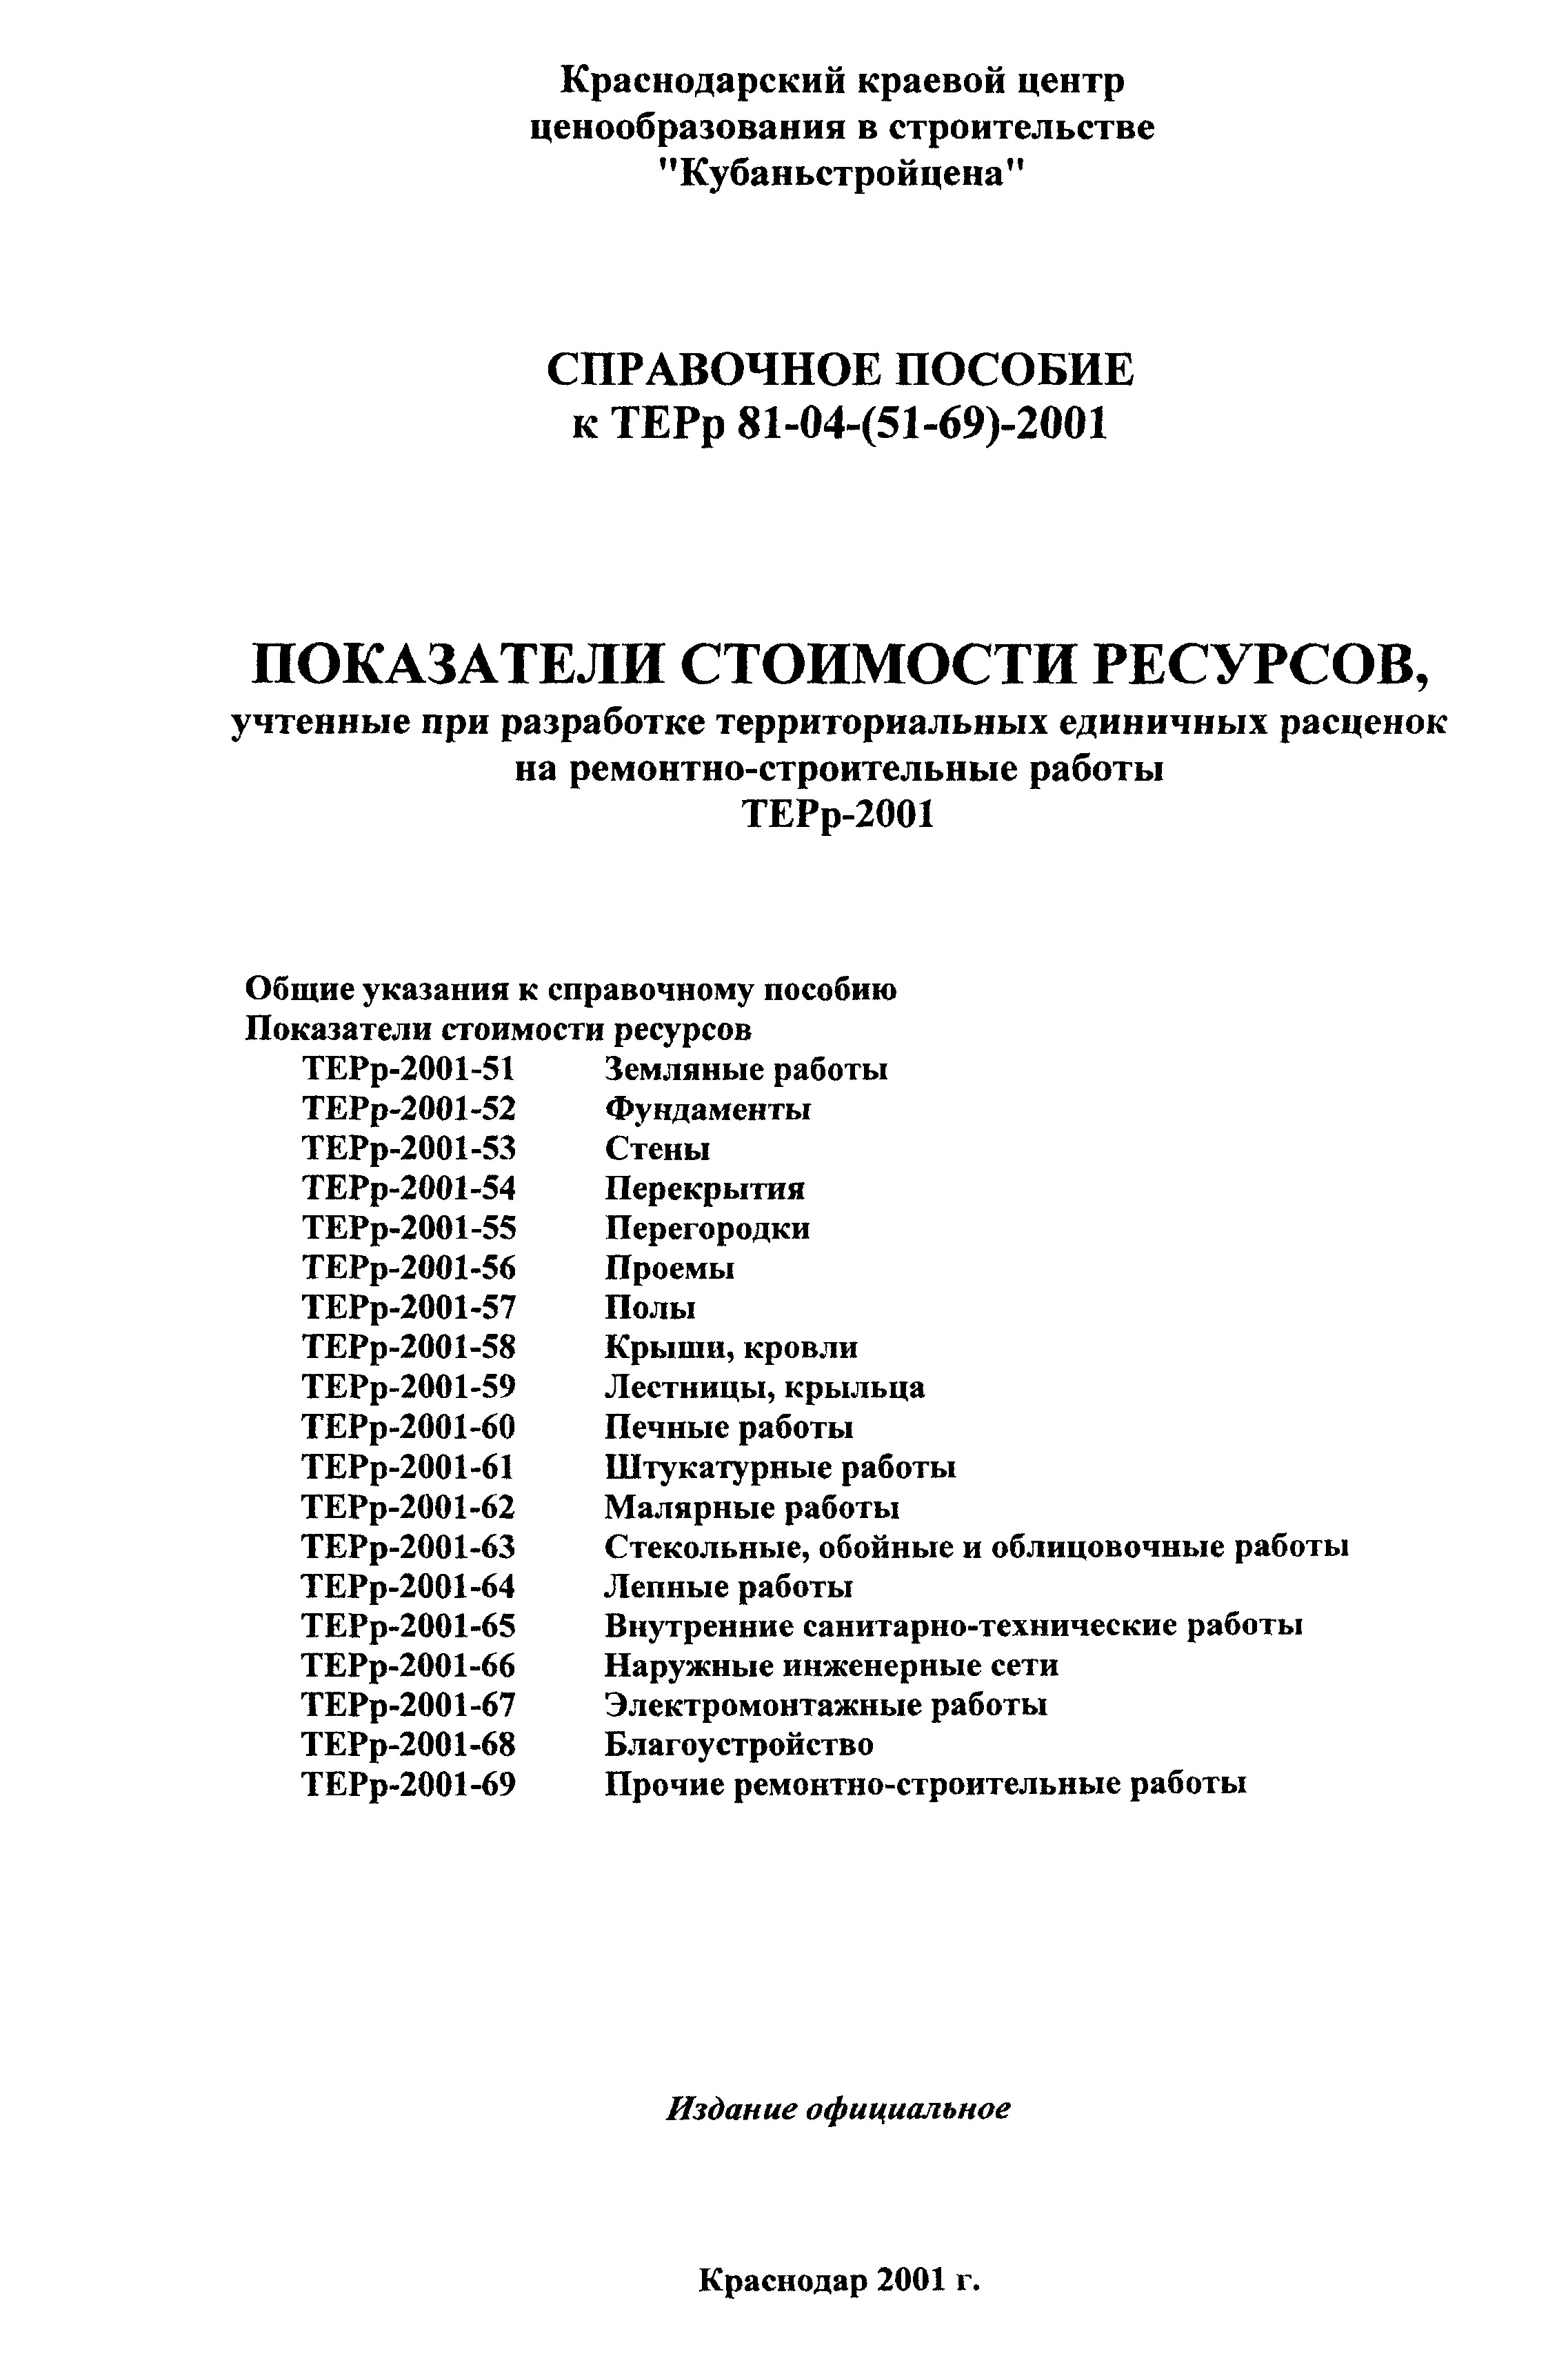 Справочное пособие к ТЕРр 81-04-61-2001